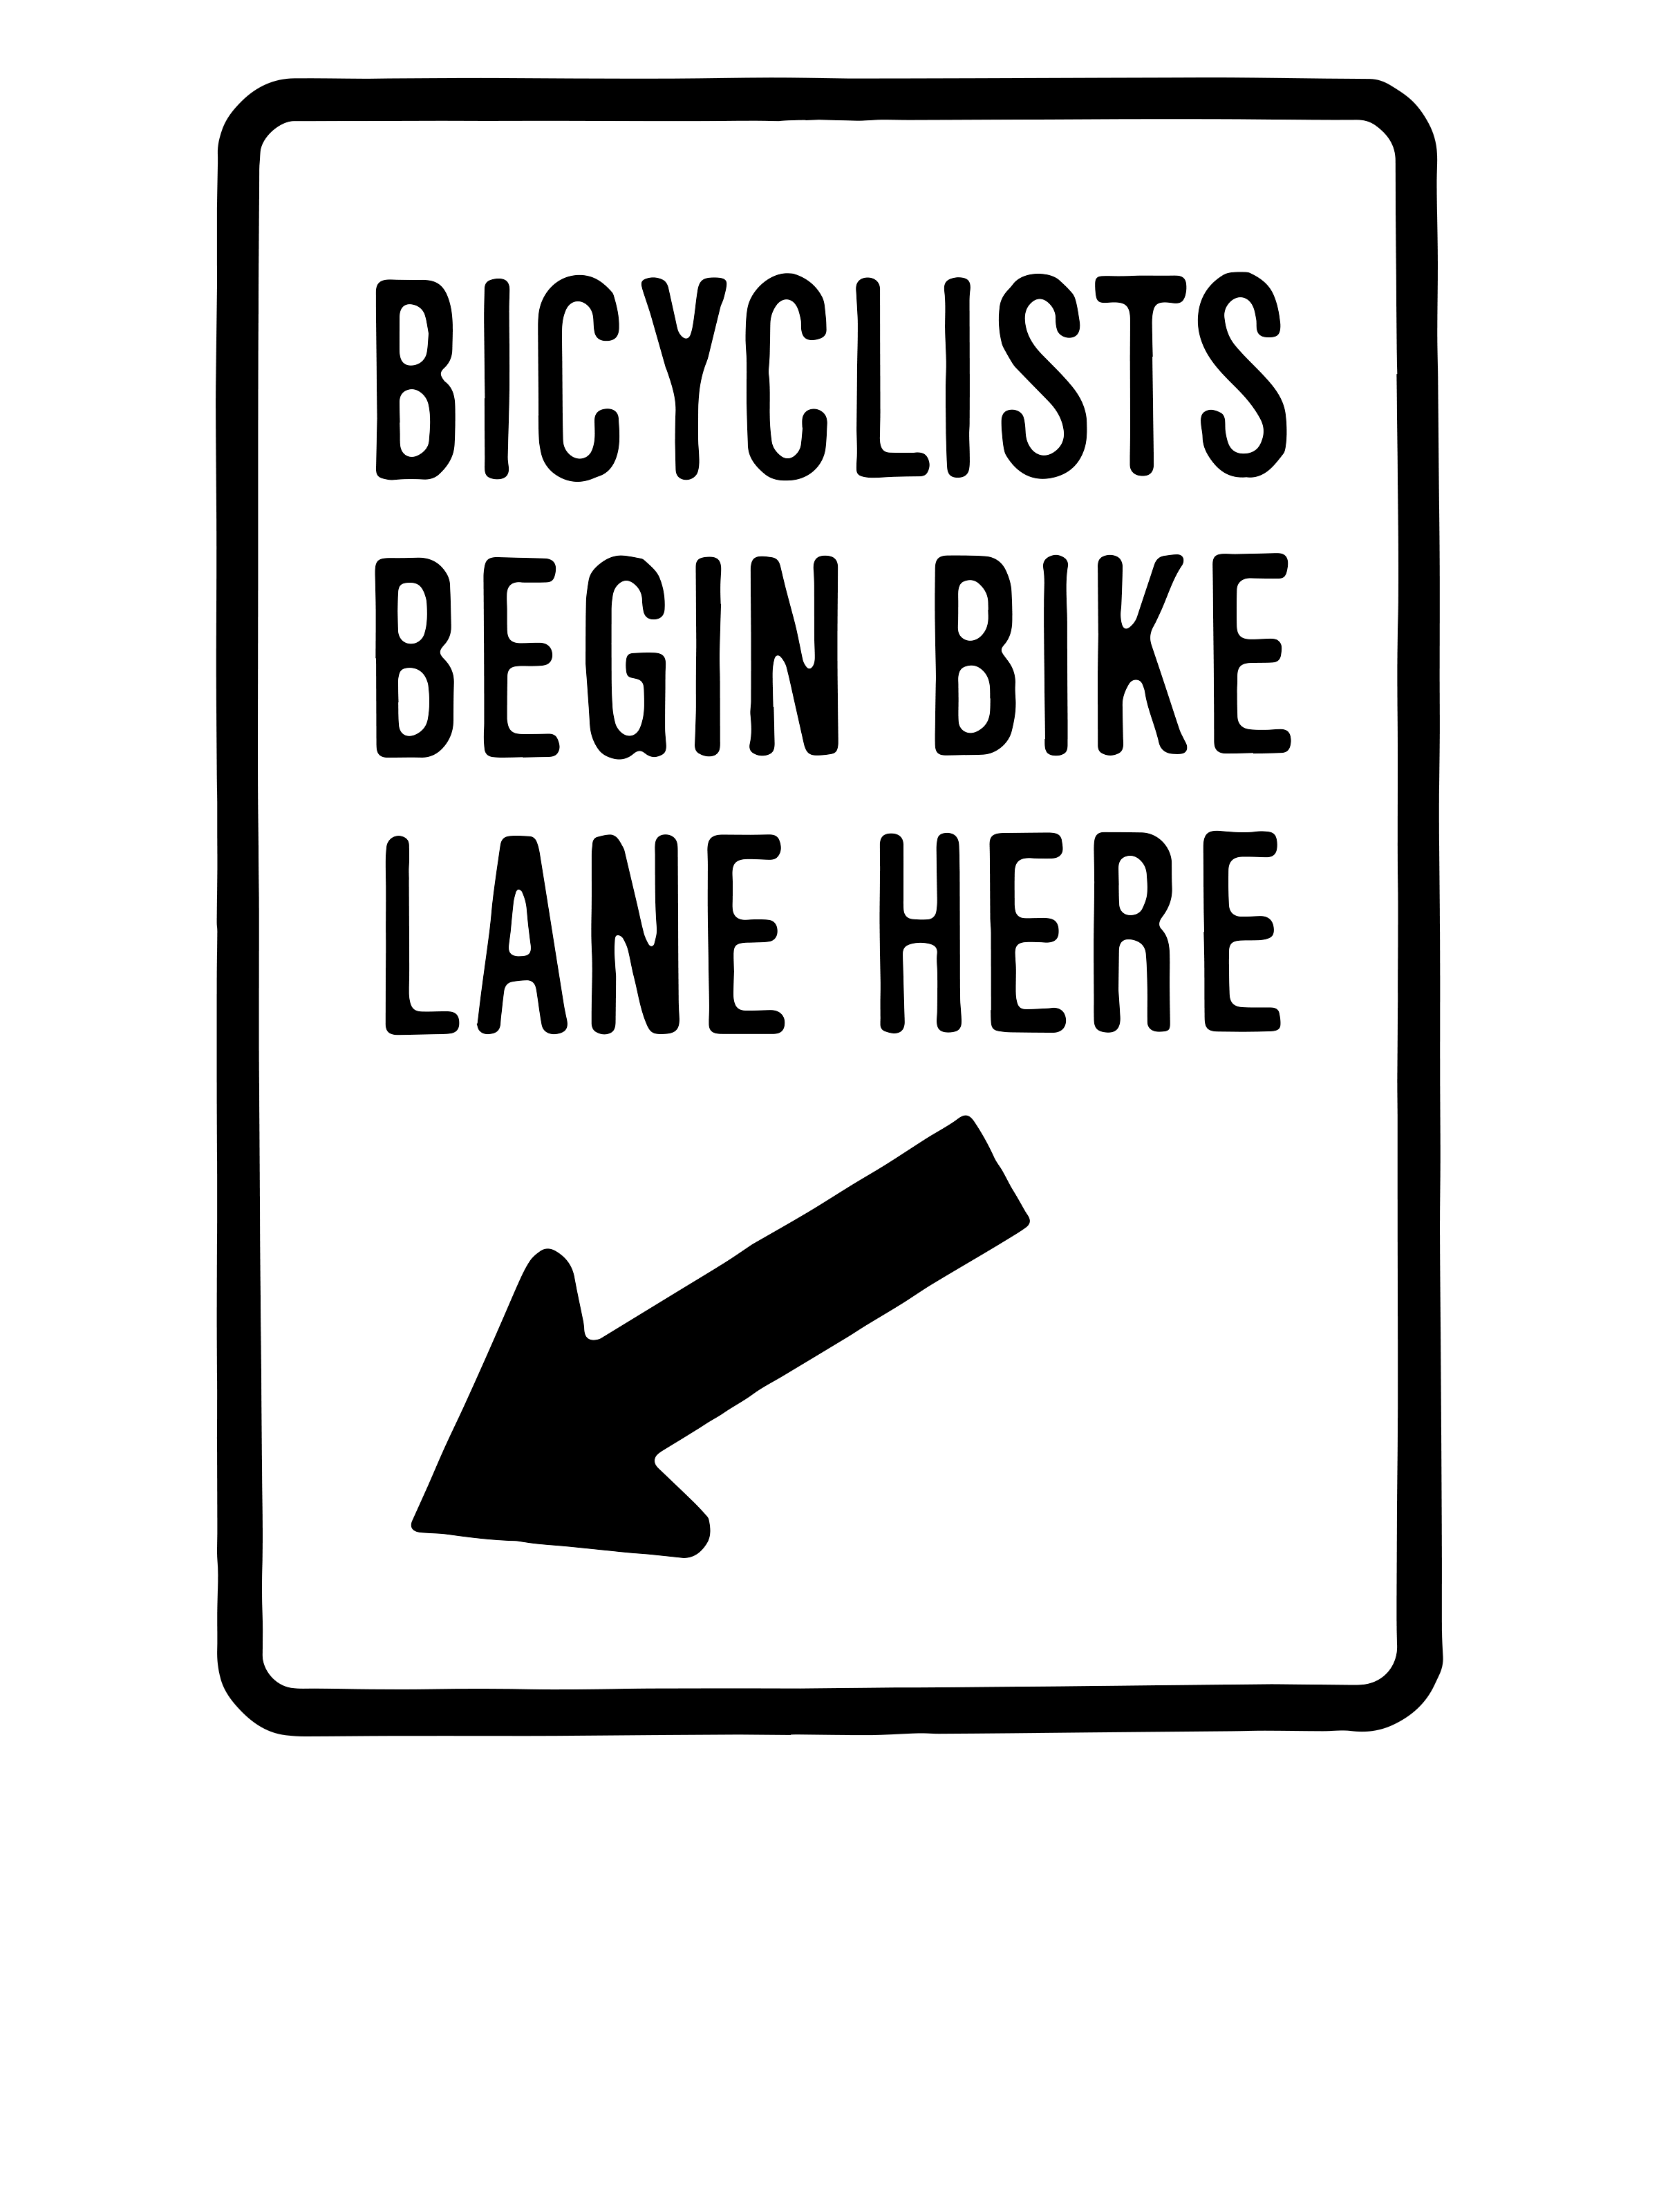 0193 – Bicycle Begin Bike Lane Here